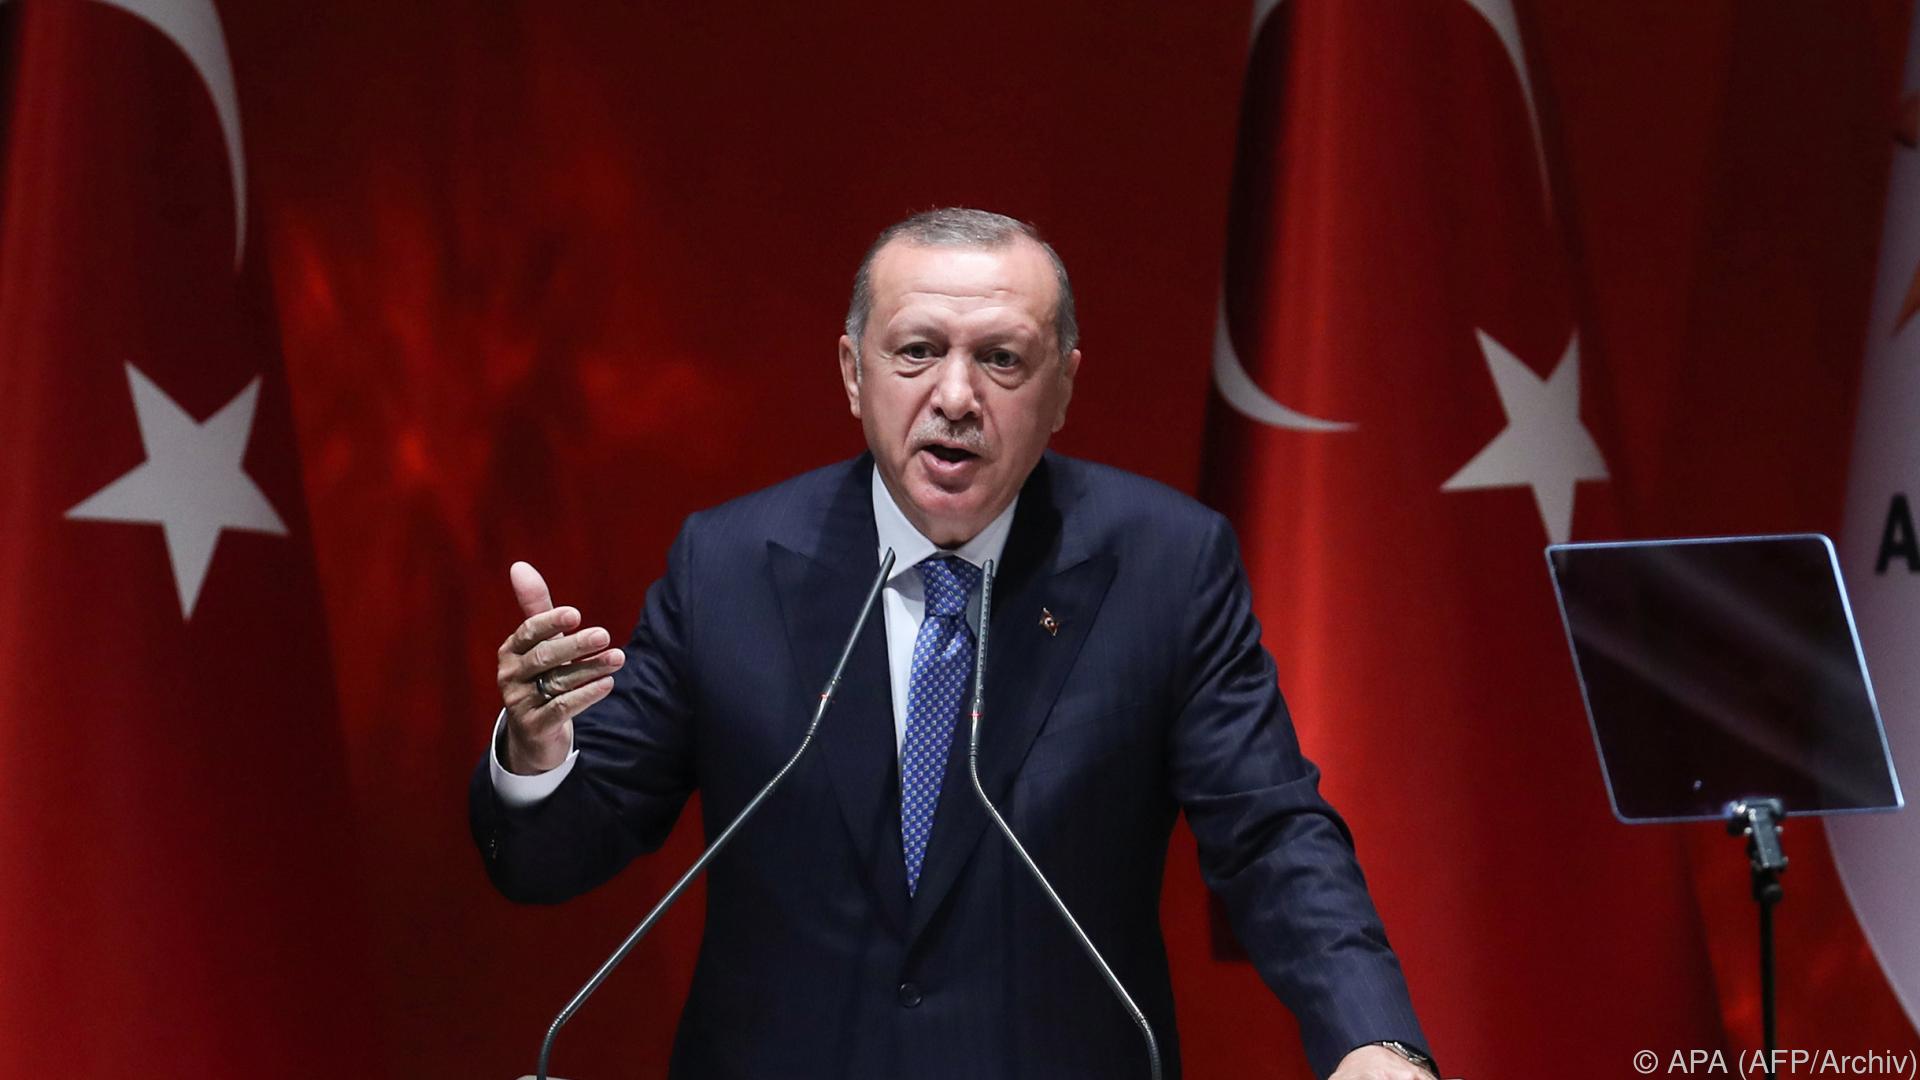 Türkei plant Milliarden für Flüchtlings-Unterkünfte in Syrien